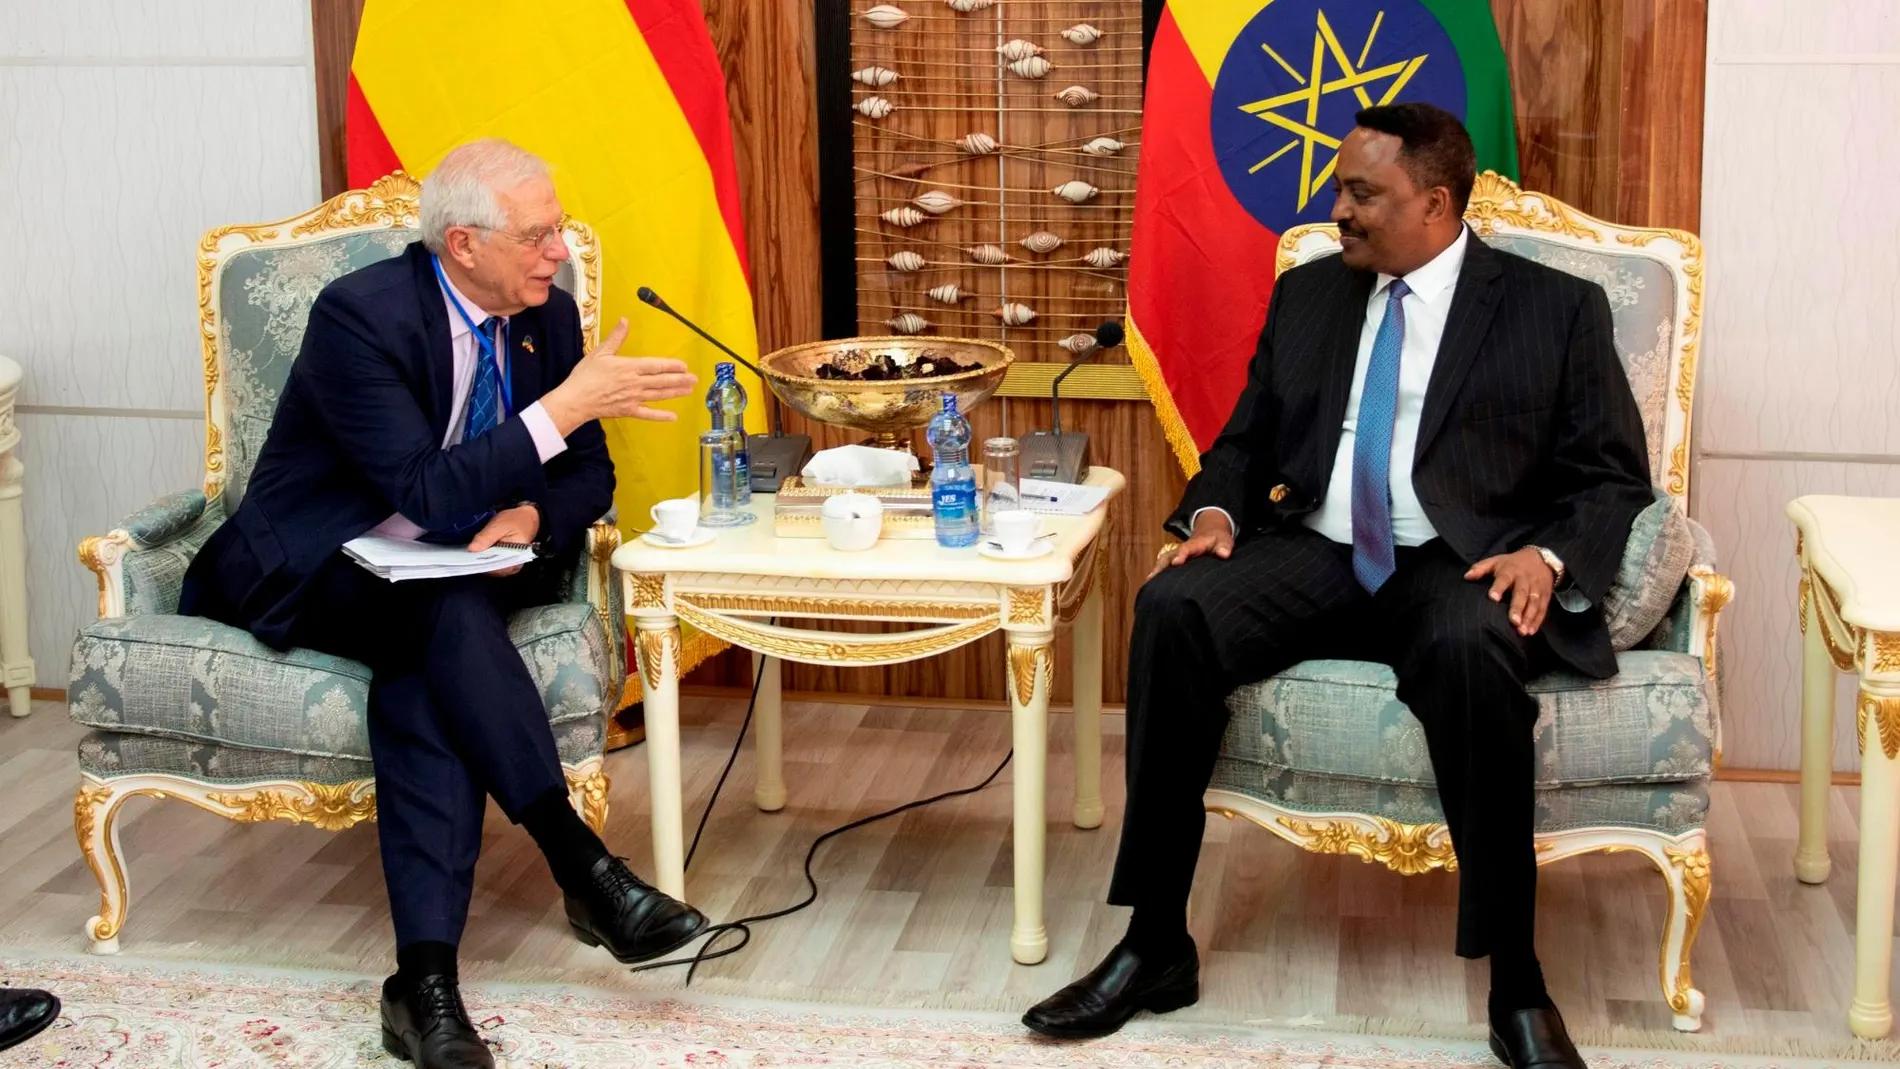 El ministro de Asuntos Exteriores de España, Josep Borrell), conversa con el ministro de Exteriores de Etiopía, Workneh Gebeyehu